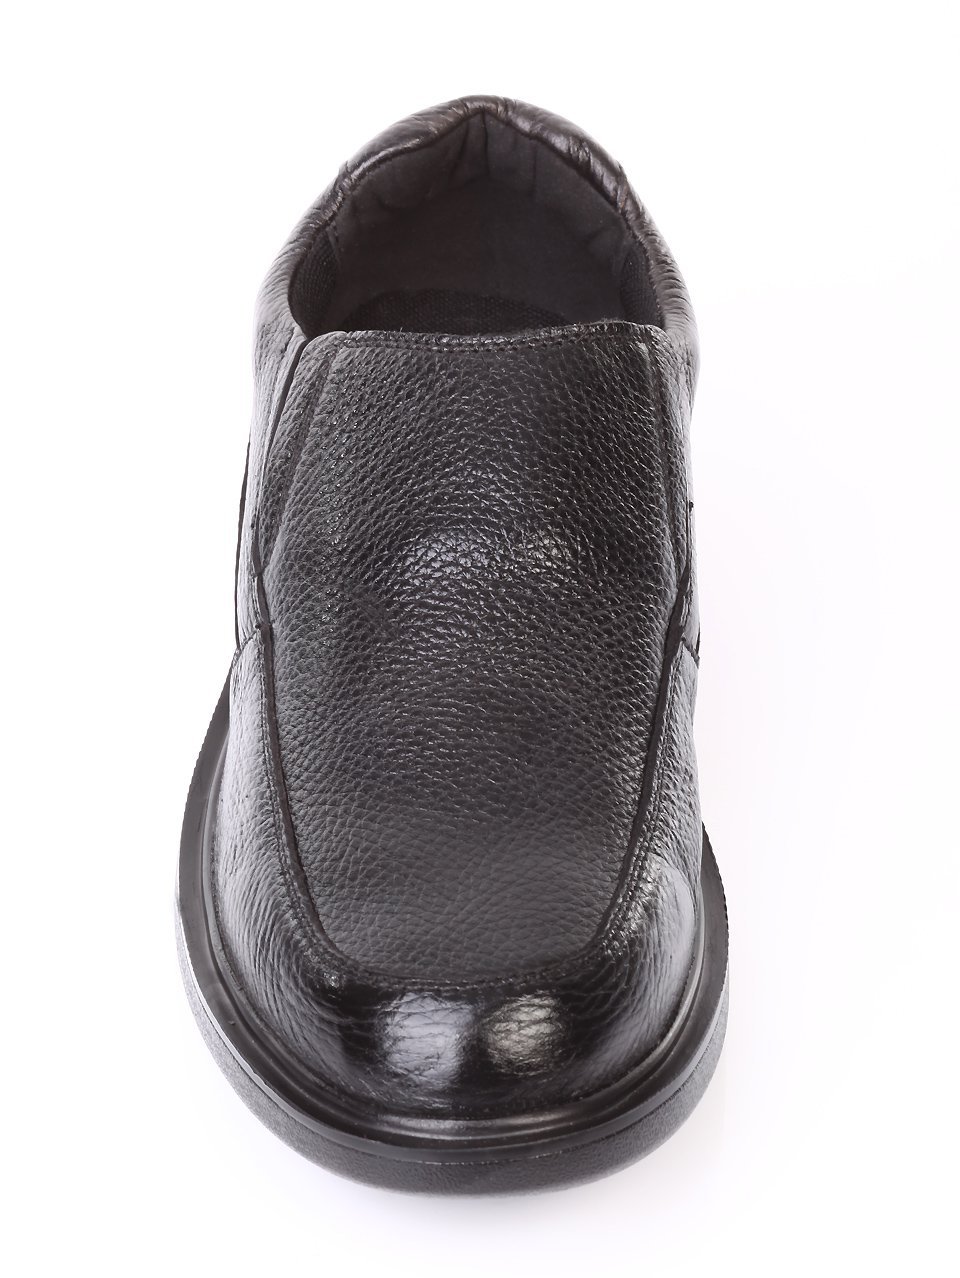 Ежедневни мъжки обувки от естествена кожа в черно 7N-17825 black